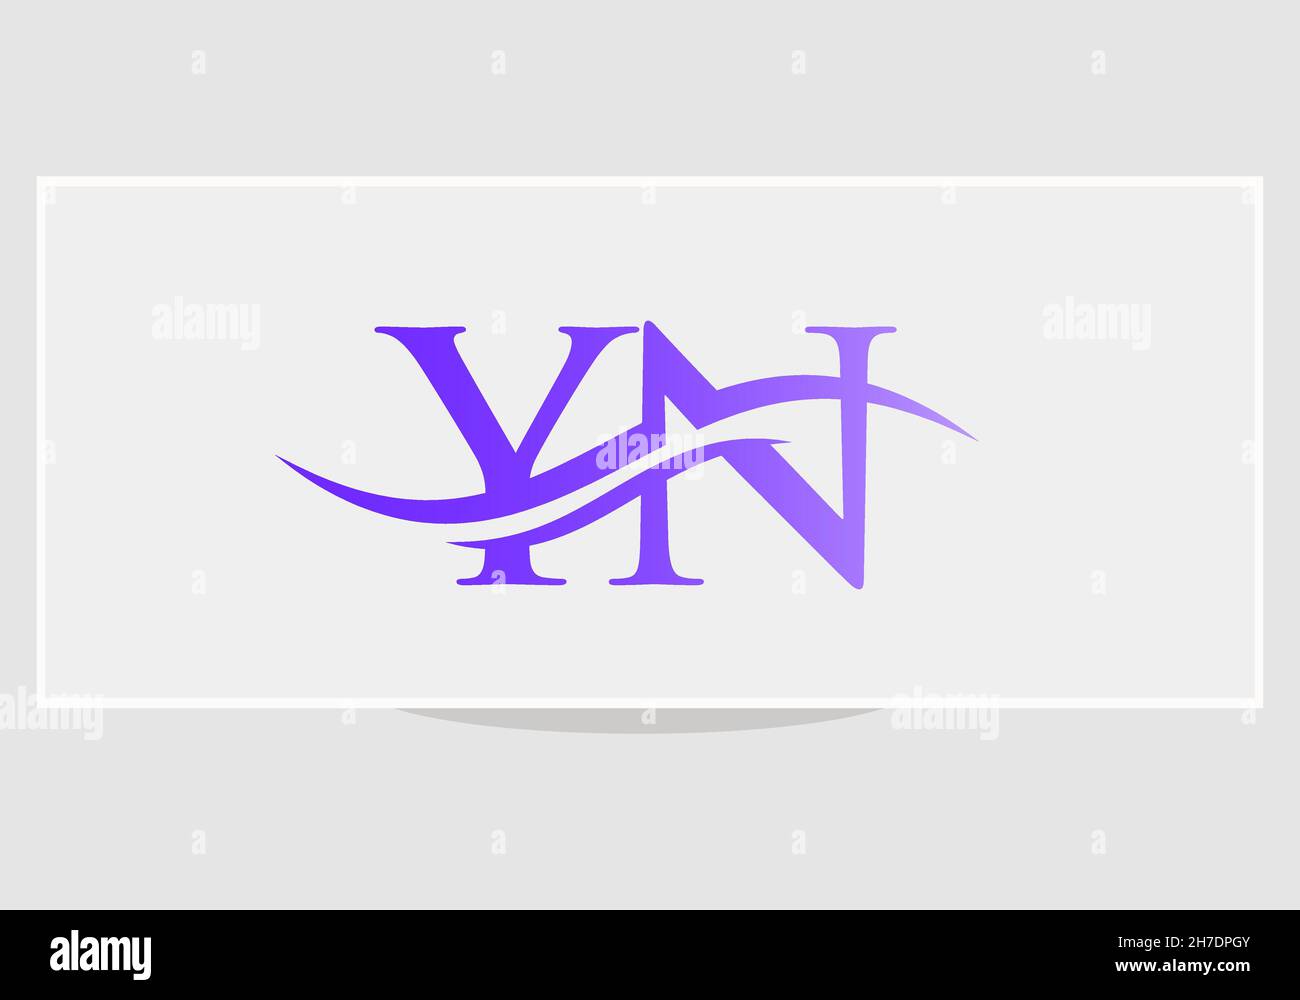 VETTORE di disegno LOGO YN. Swoosh lettera YN logo design. Modello vettoriale del logo associato alla lettera YN iniziale Illustrazione Vettoriale